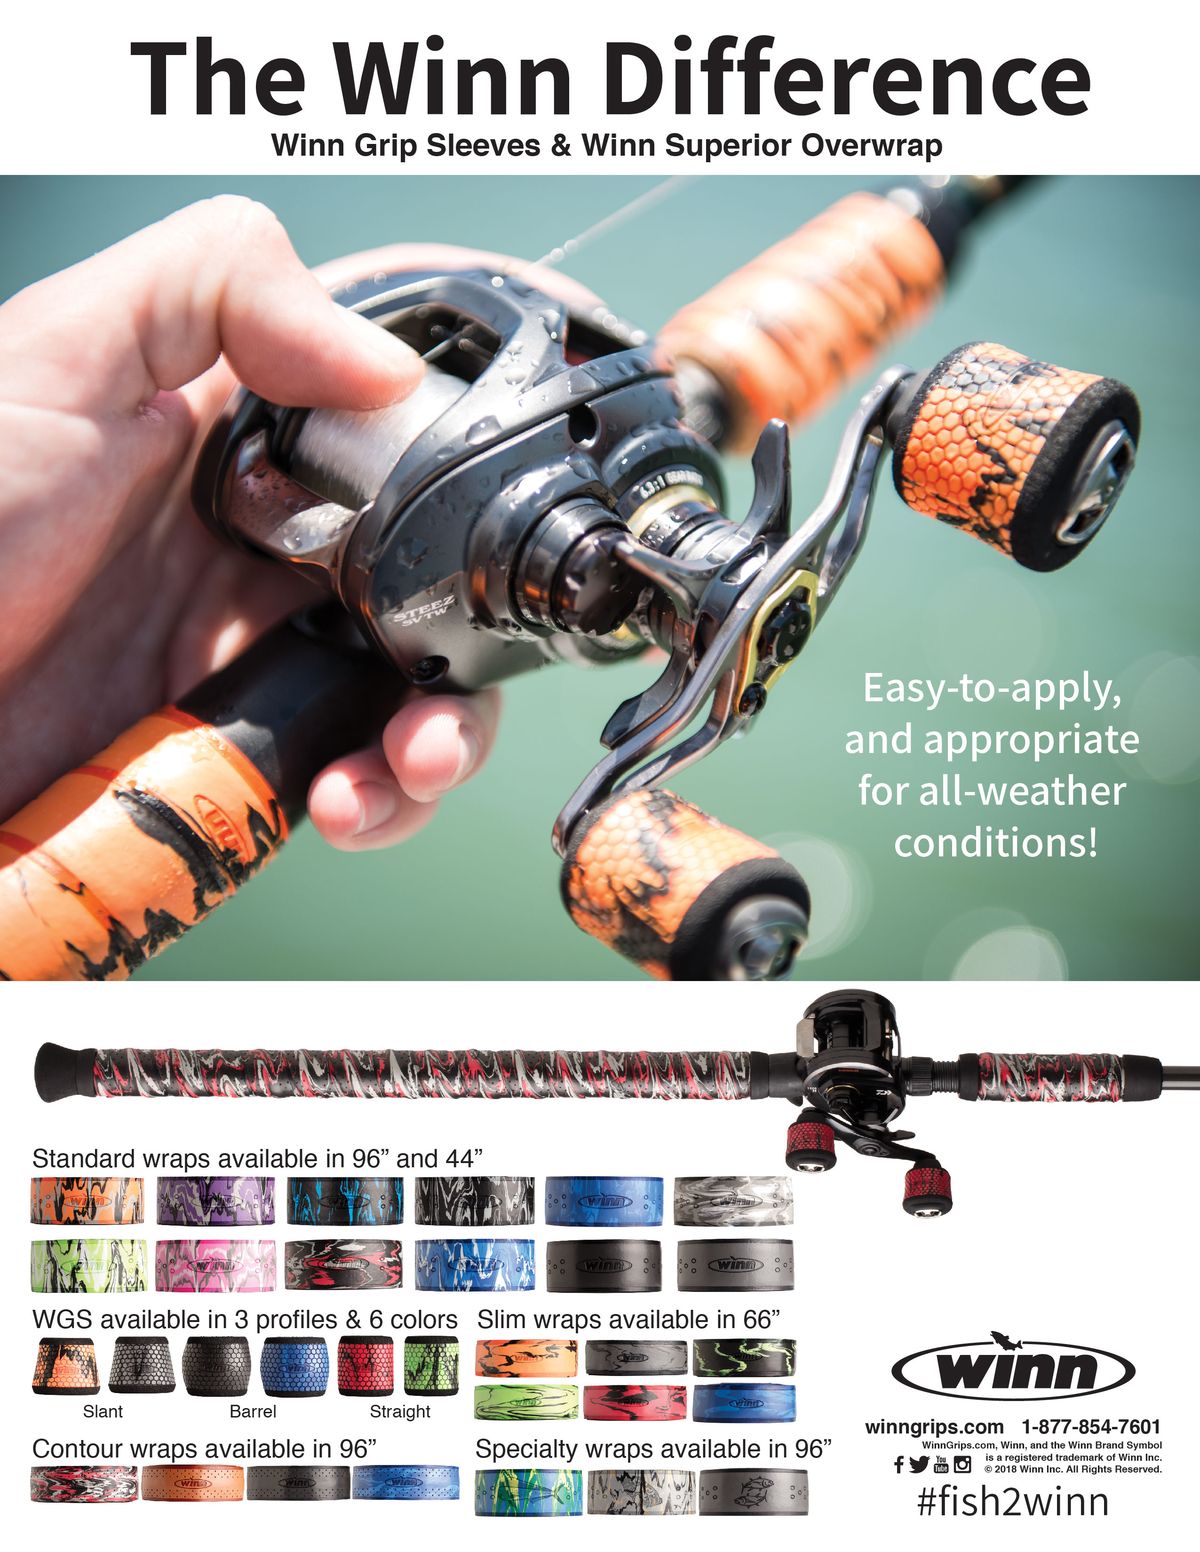 Print Ads / Winn - The Best Grips in Fishing